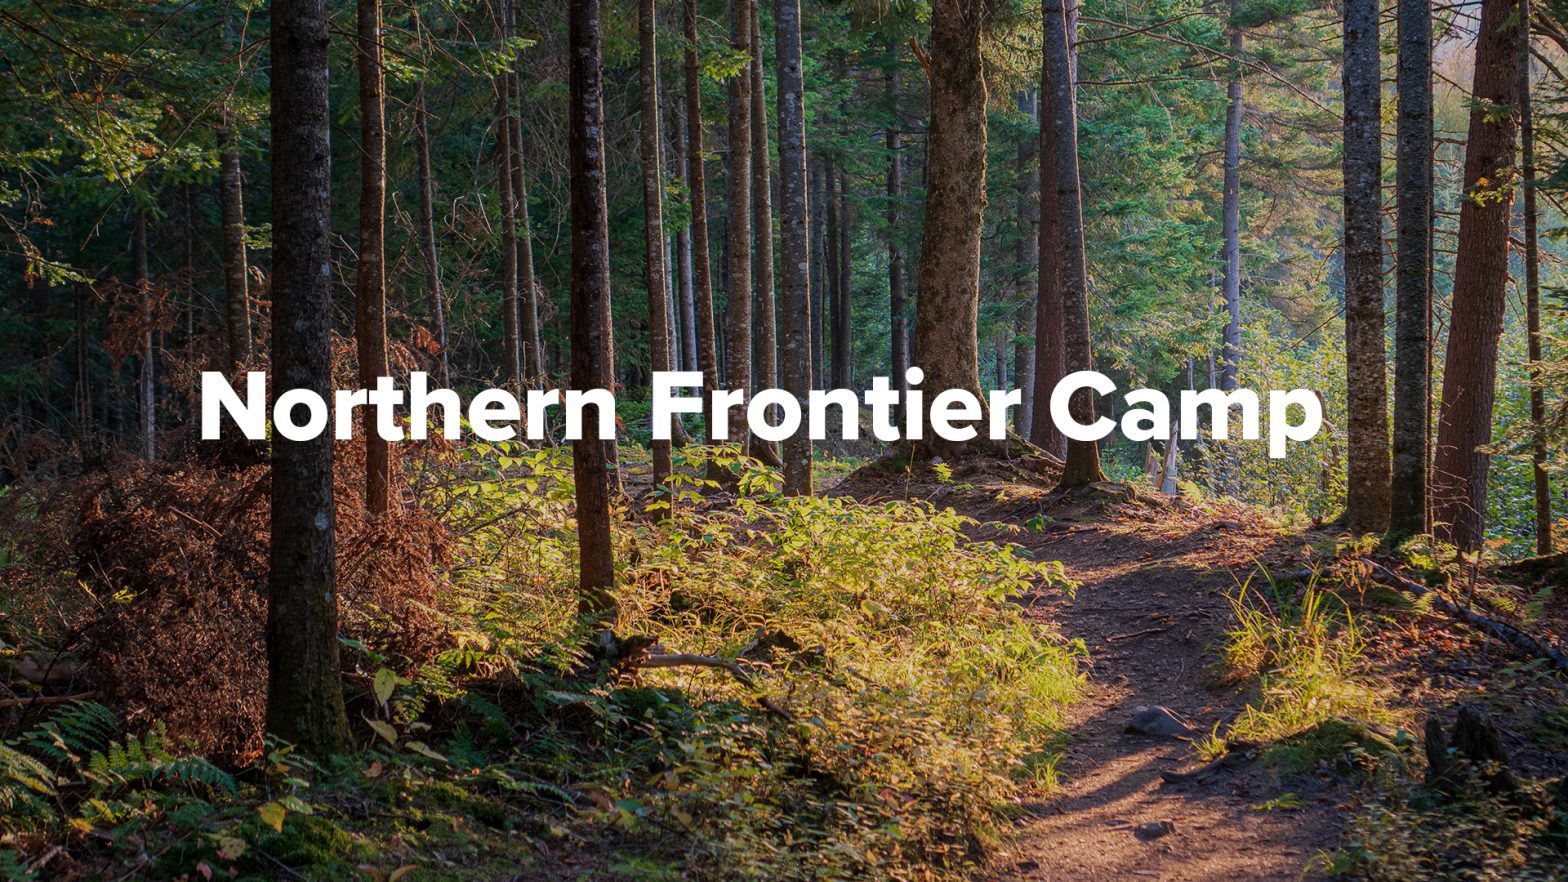 Northern Frontier Camper’s Week